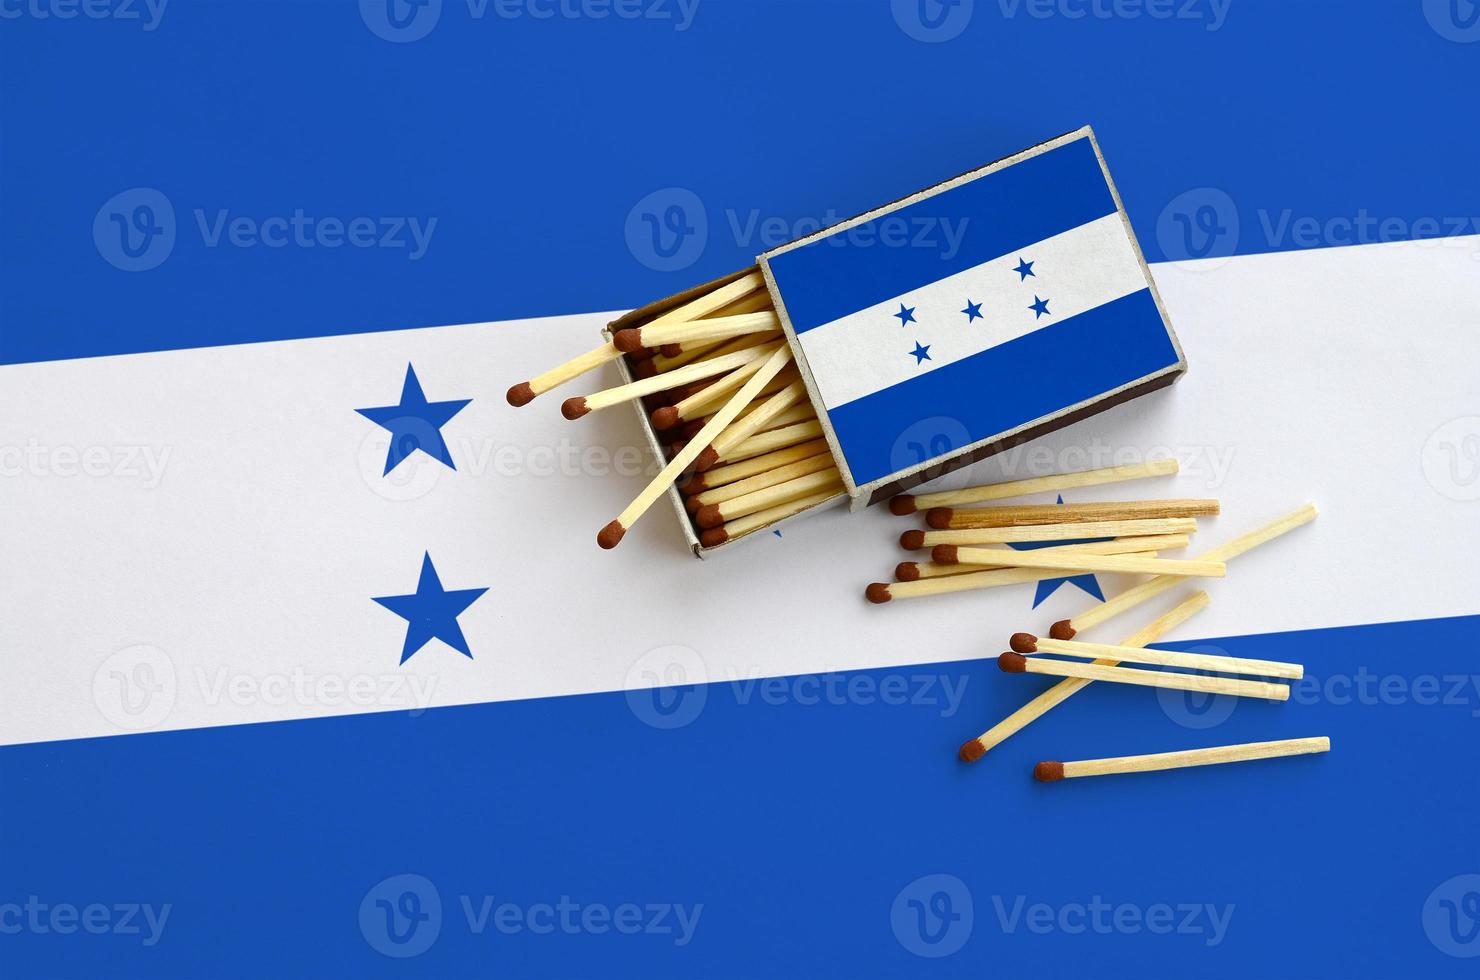 le drapeau du honduras est affiché sur une boîte d'allumettes ouverte, d'où tombent plusieurs allumettes et repose sur un grand drapeau photo